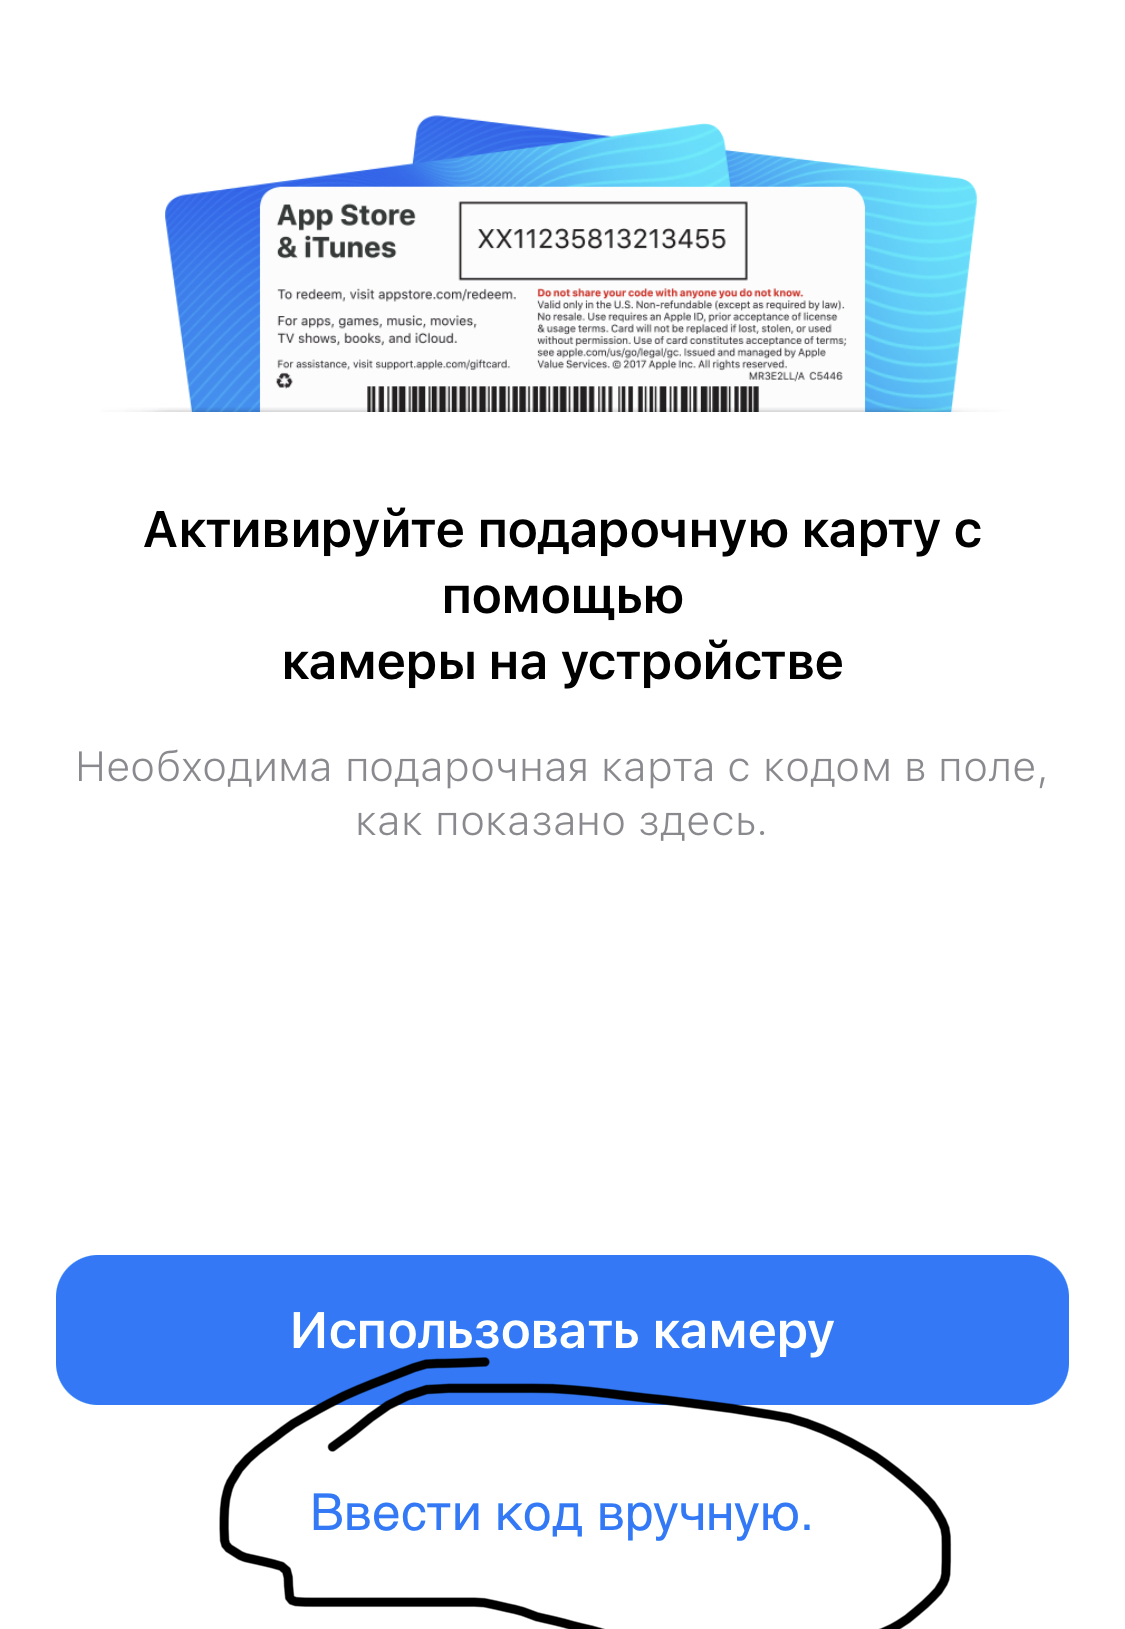 Подарочная карта App Store & iTunes 500 руб. (RUS)